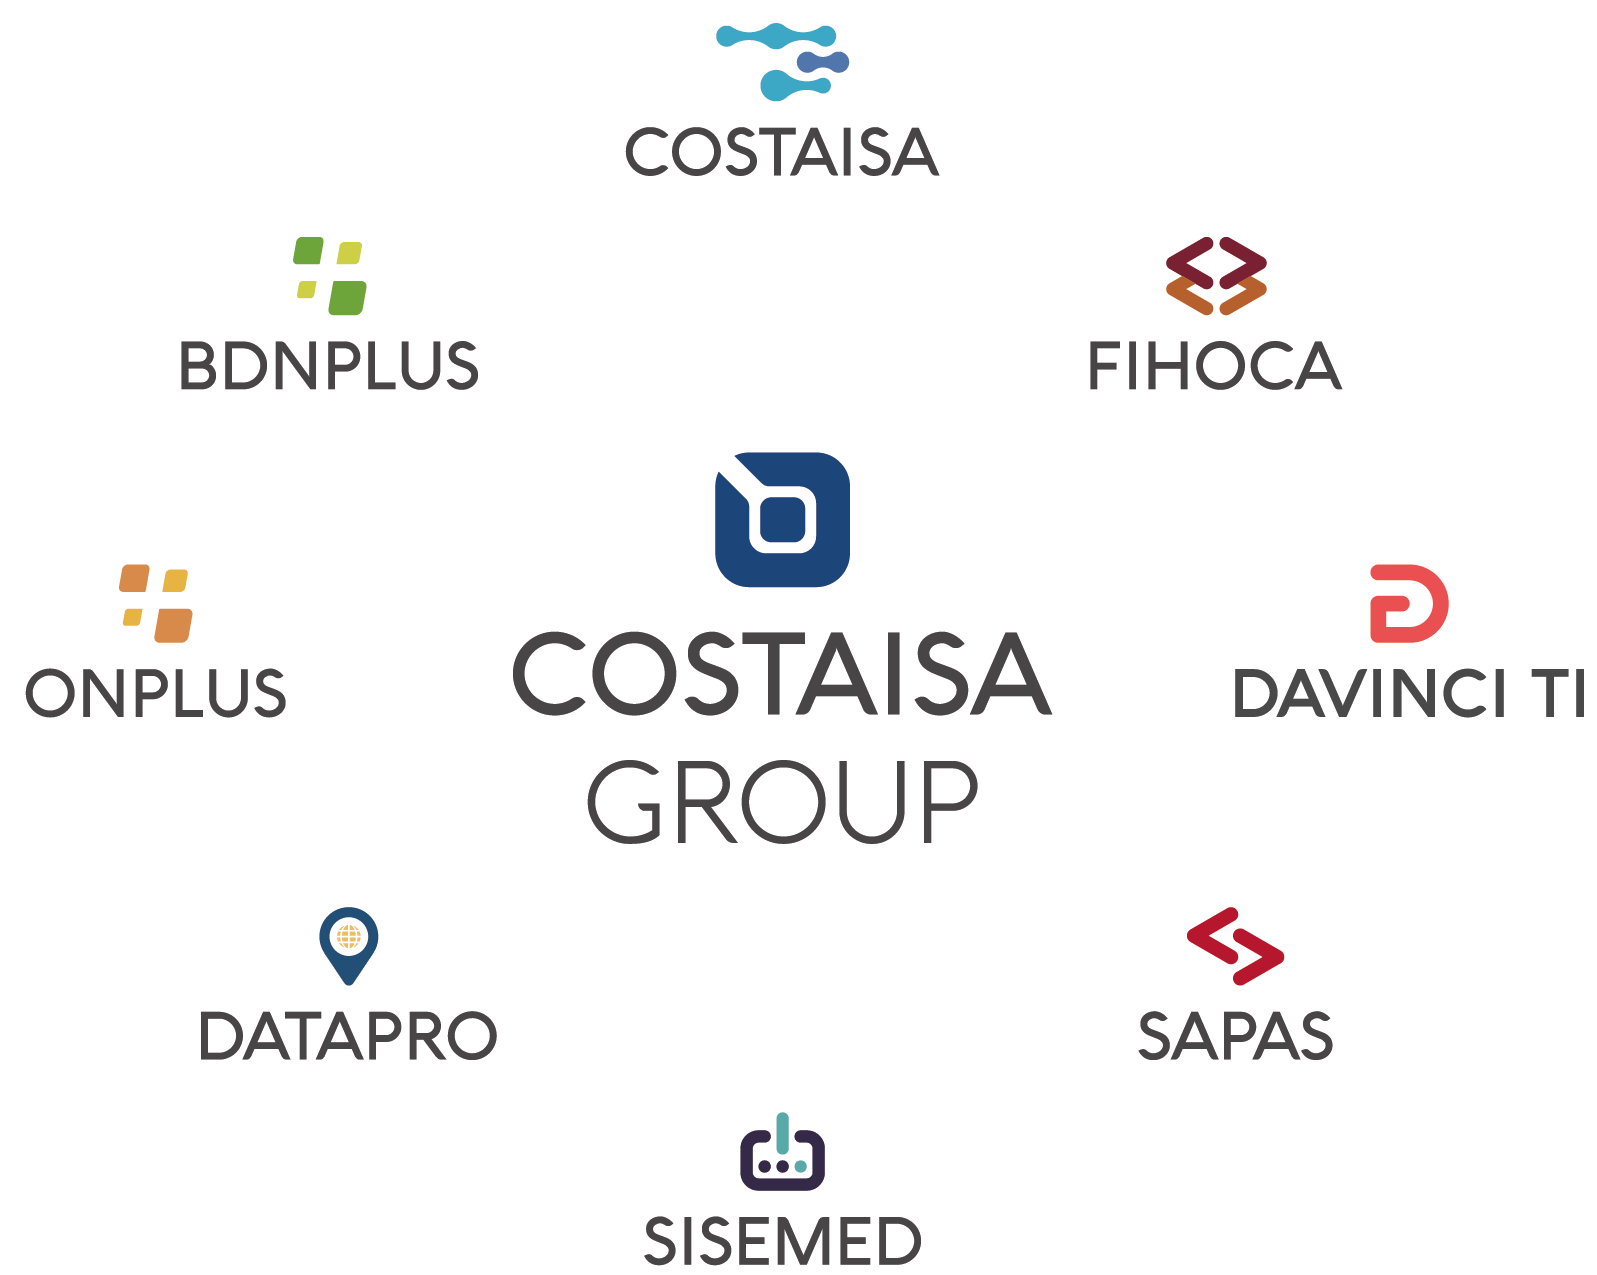 Empresas de Costaisa Group